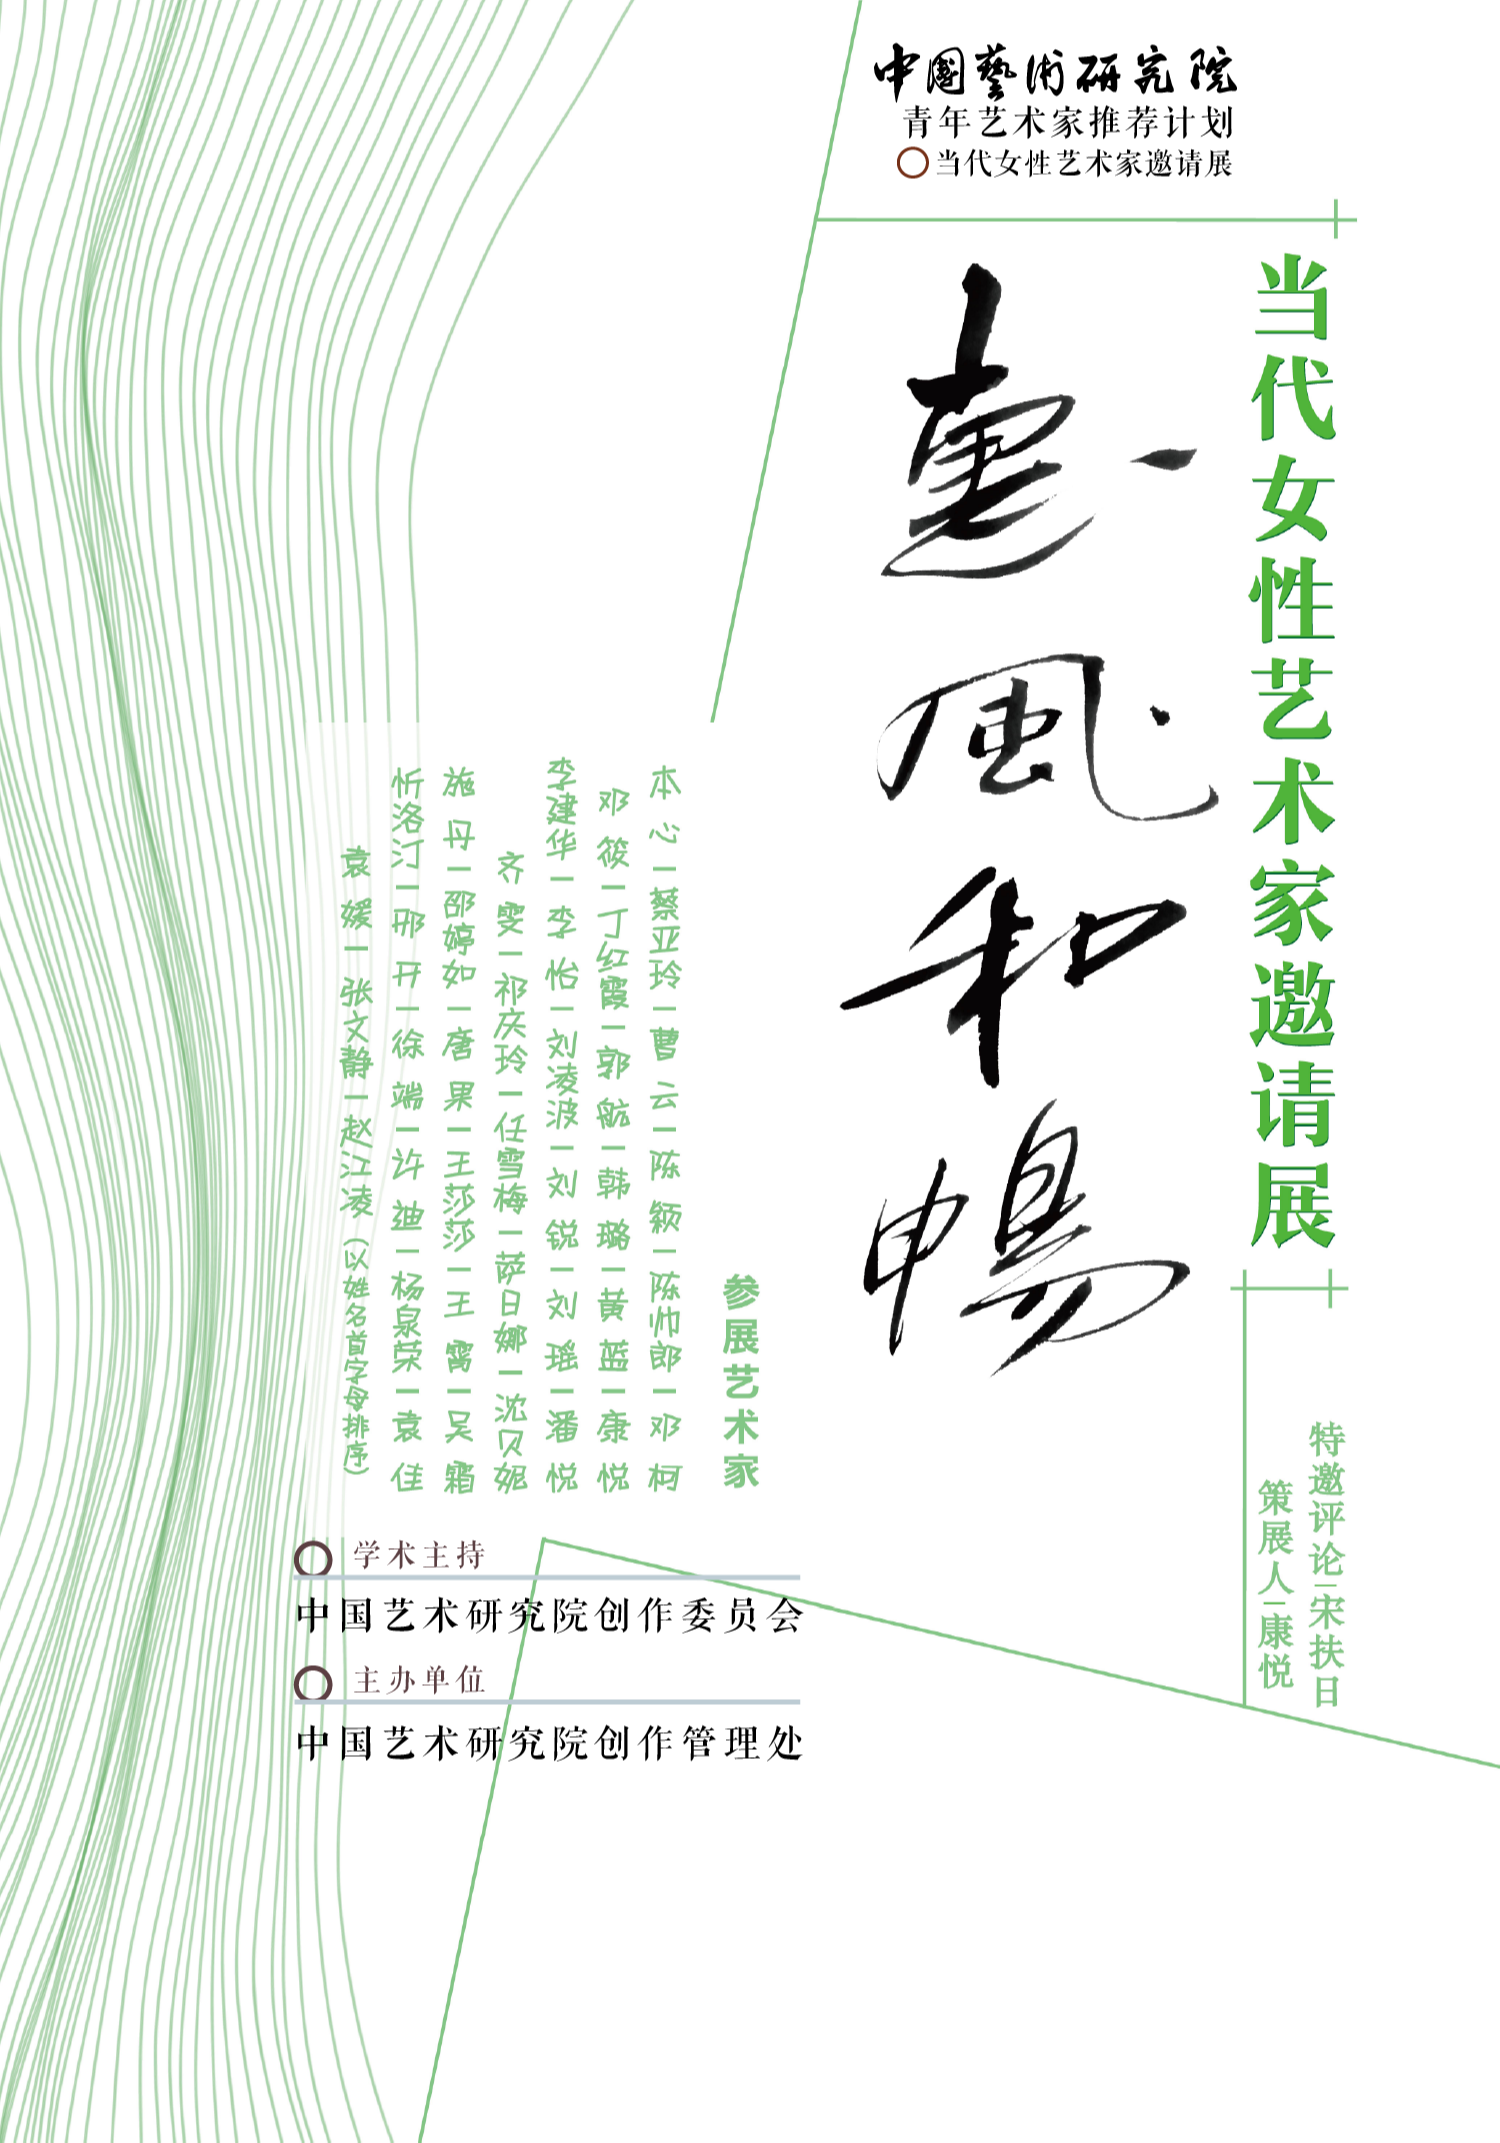 中国艺术研究院青年艺术家推荐计划云展系列：“惠风和畅”当代女性艺术家邀请展